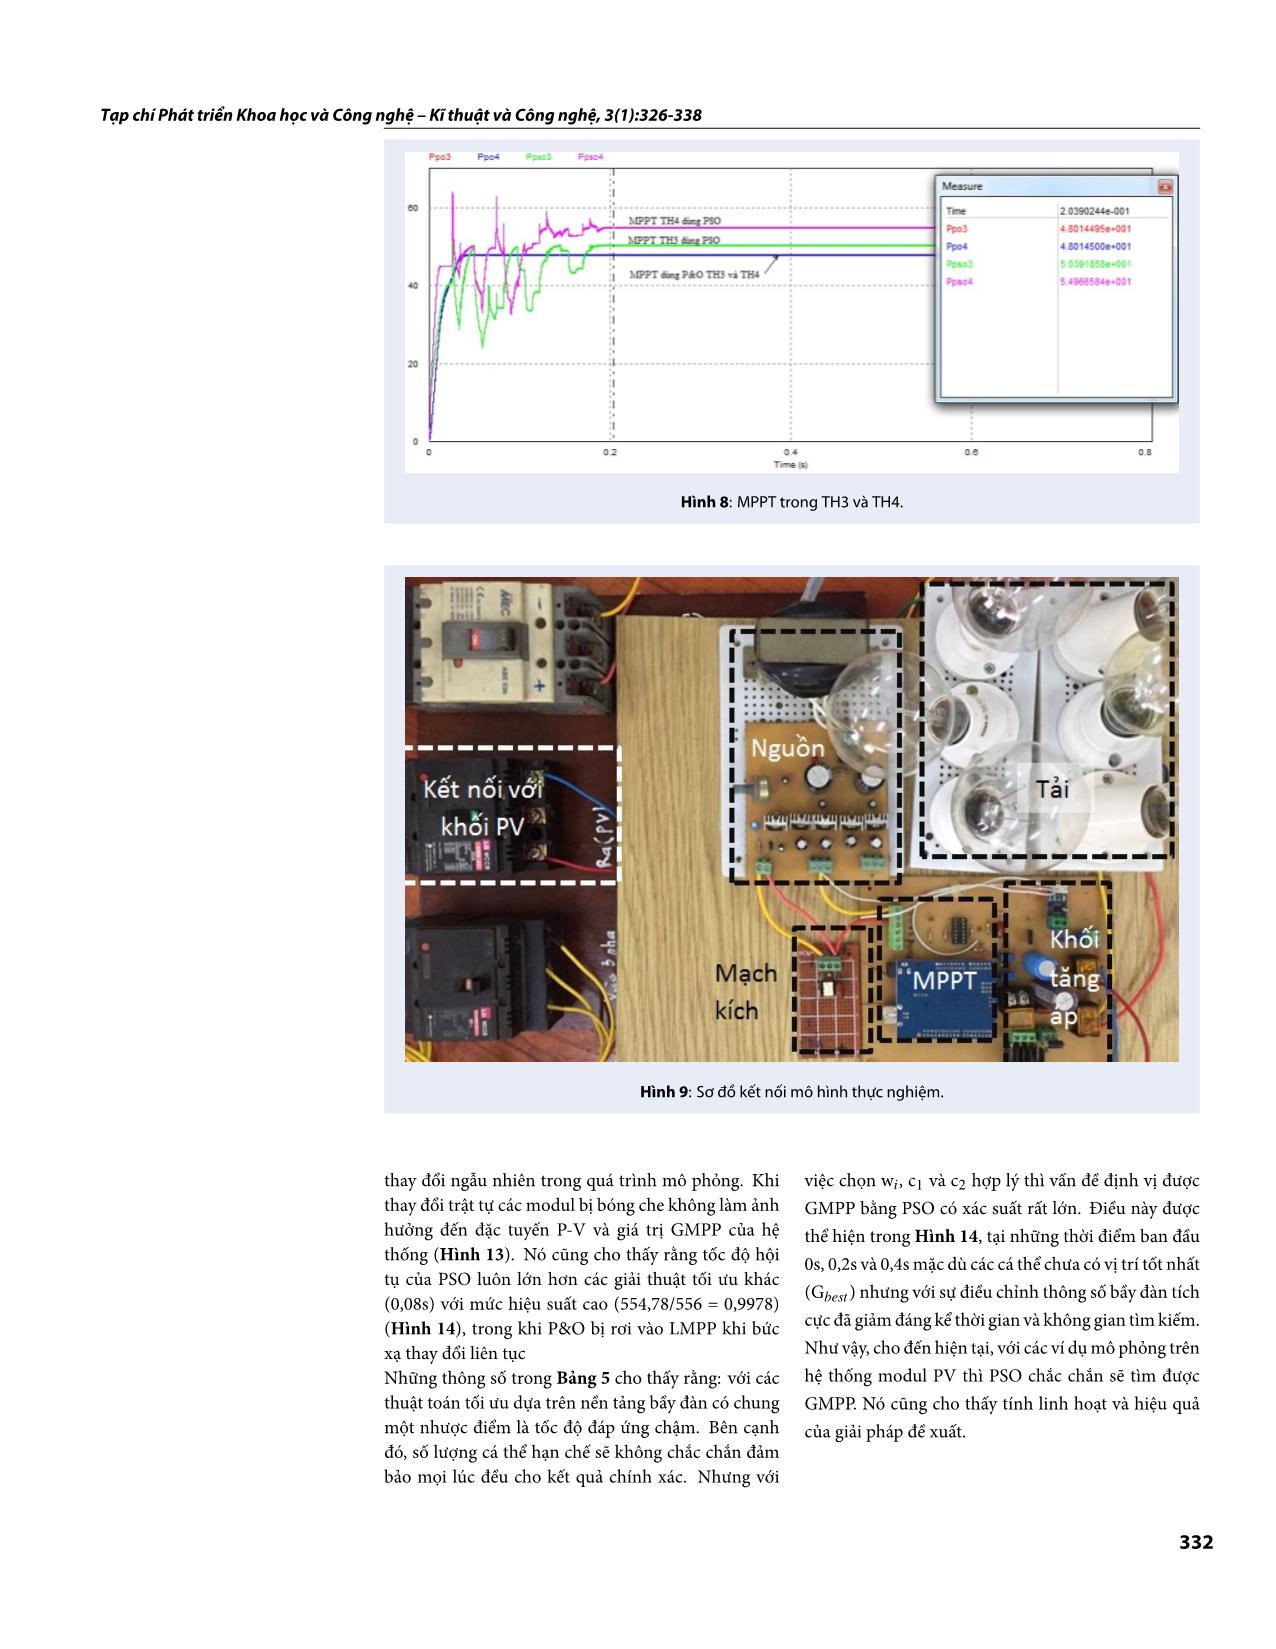 Tối ưu điểm phát công suất cực đại của pin quang điện làm việc trong điều kiện bóng che trang 7